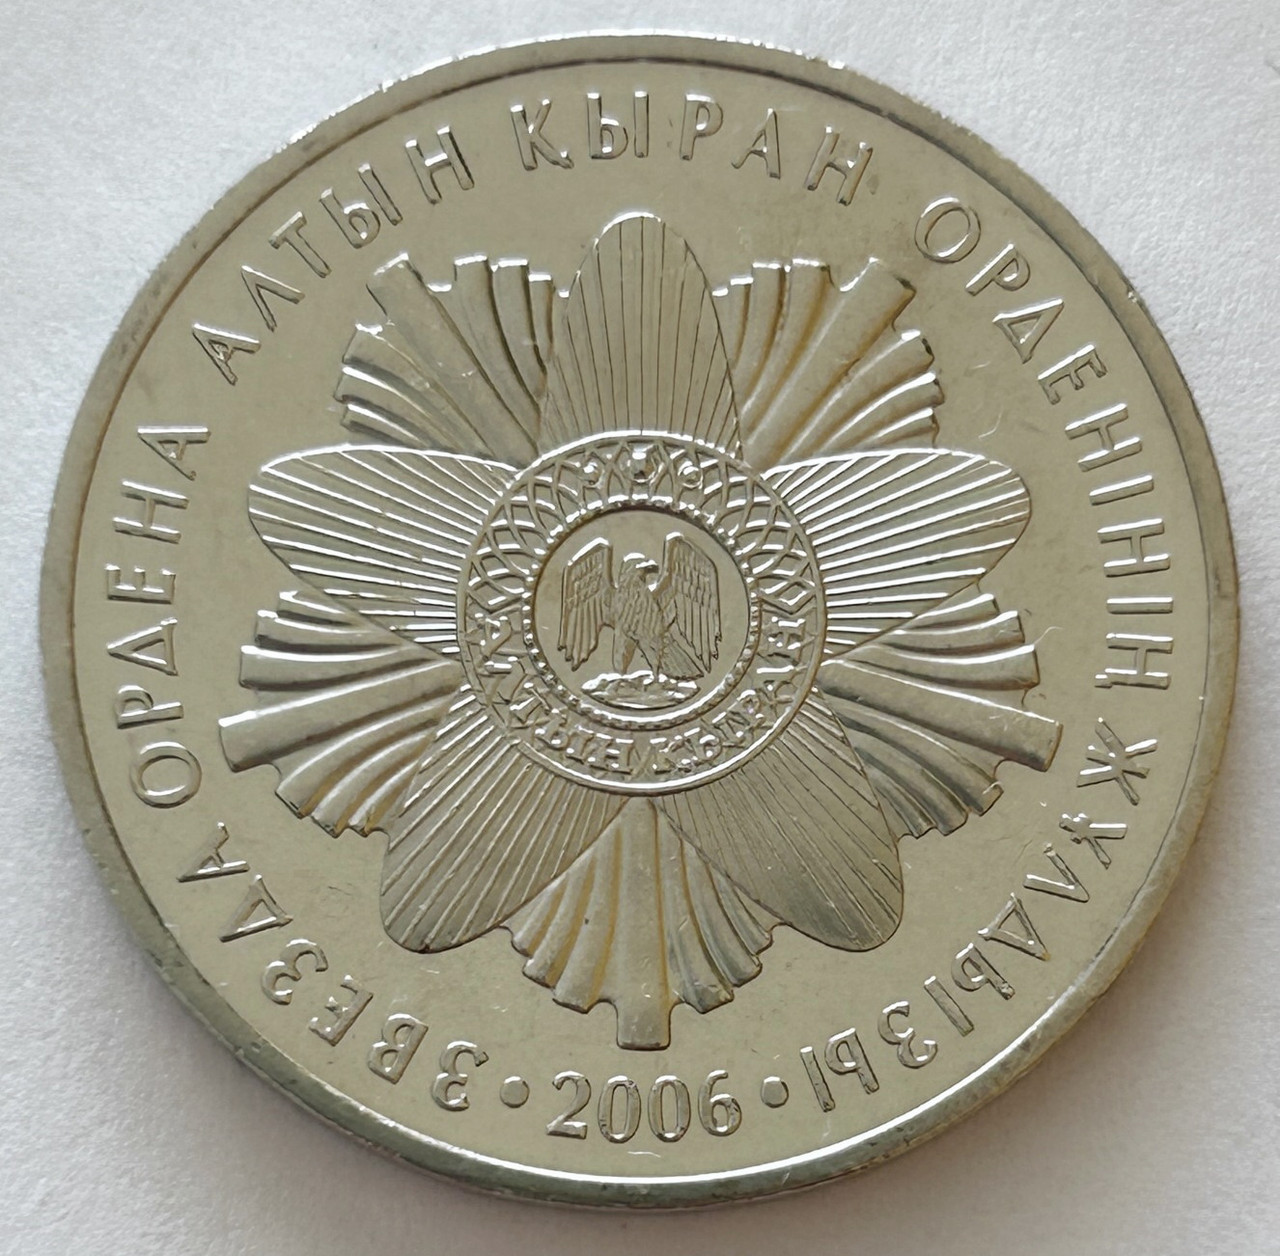 Казахстан 50 тенге 2006, Зірка ордену Алтин Киран, Серія "Державні нагороди"